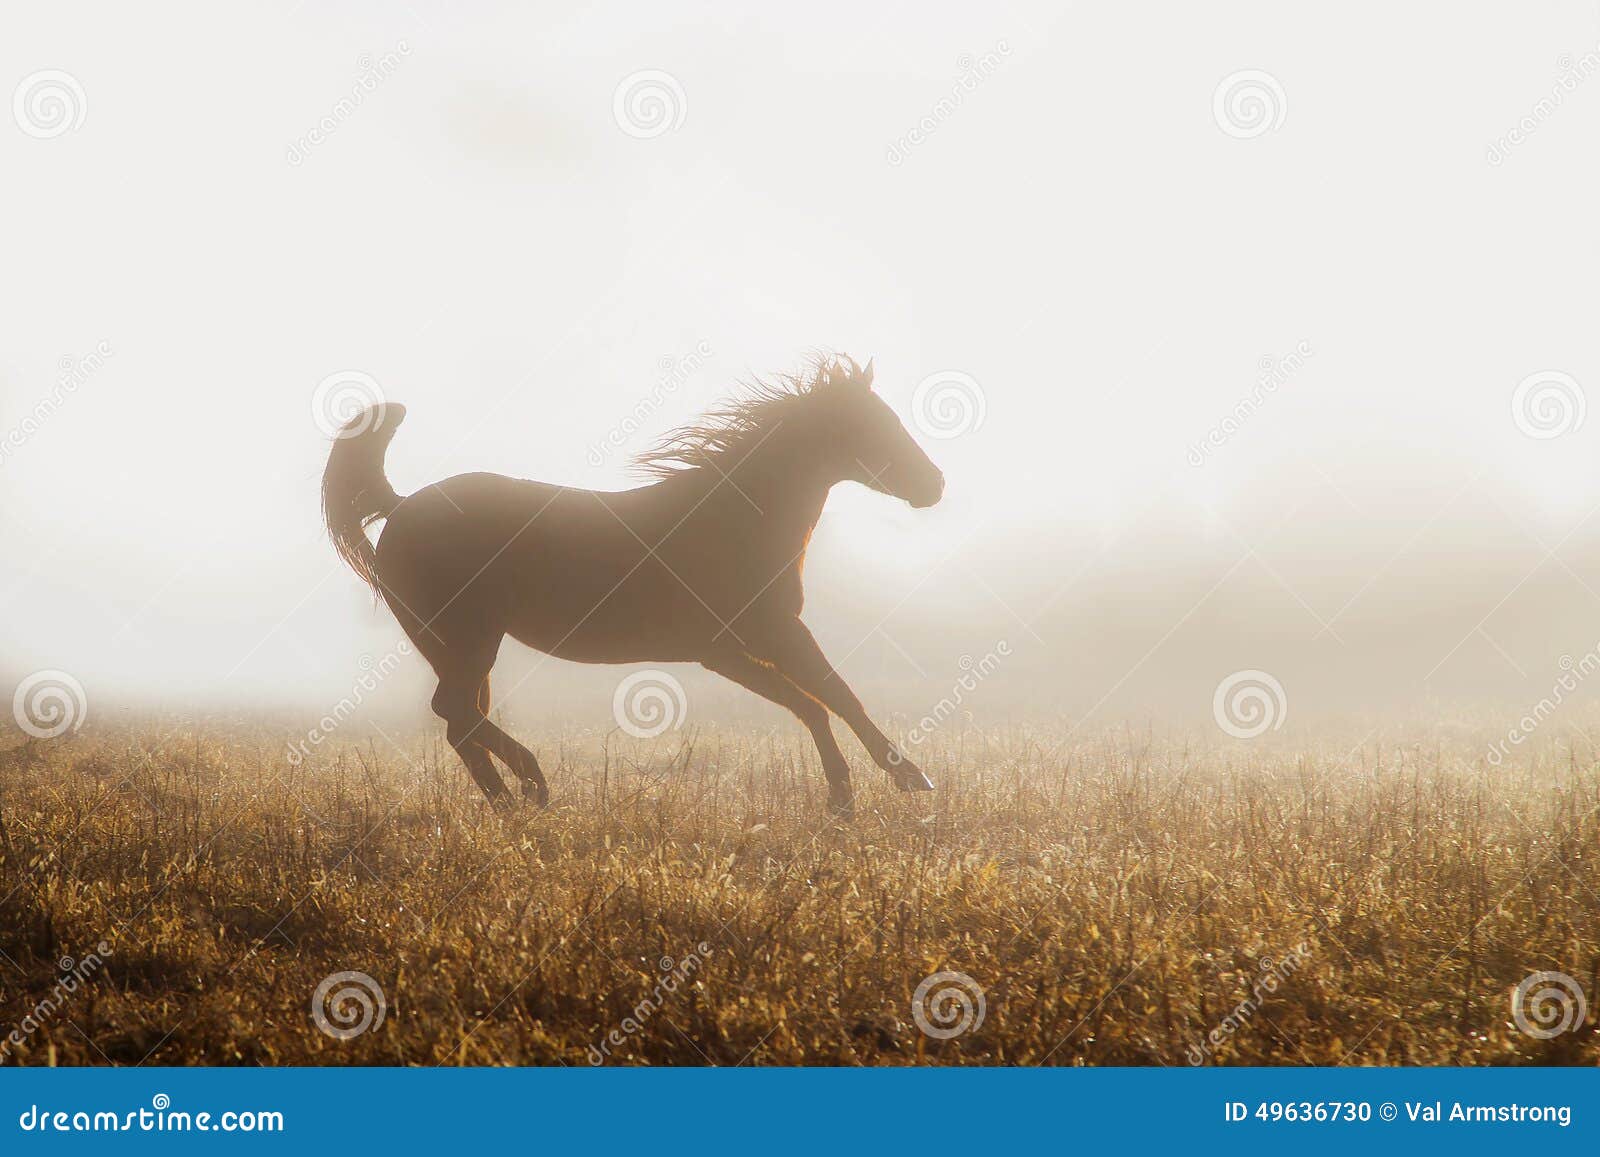 quarter horse running in fog